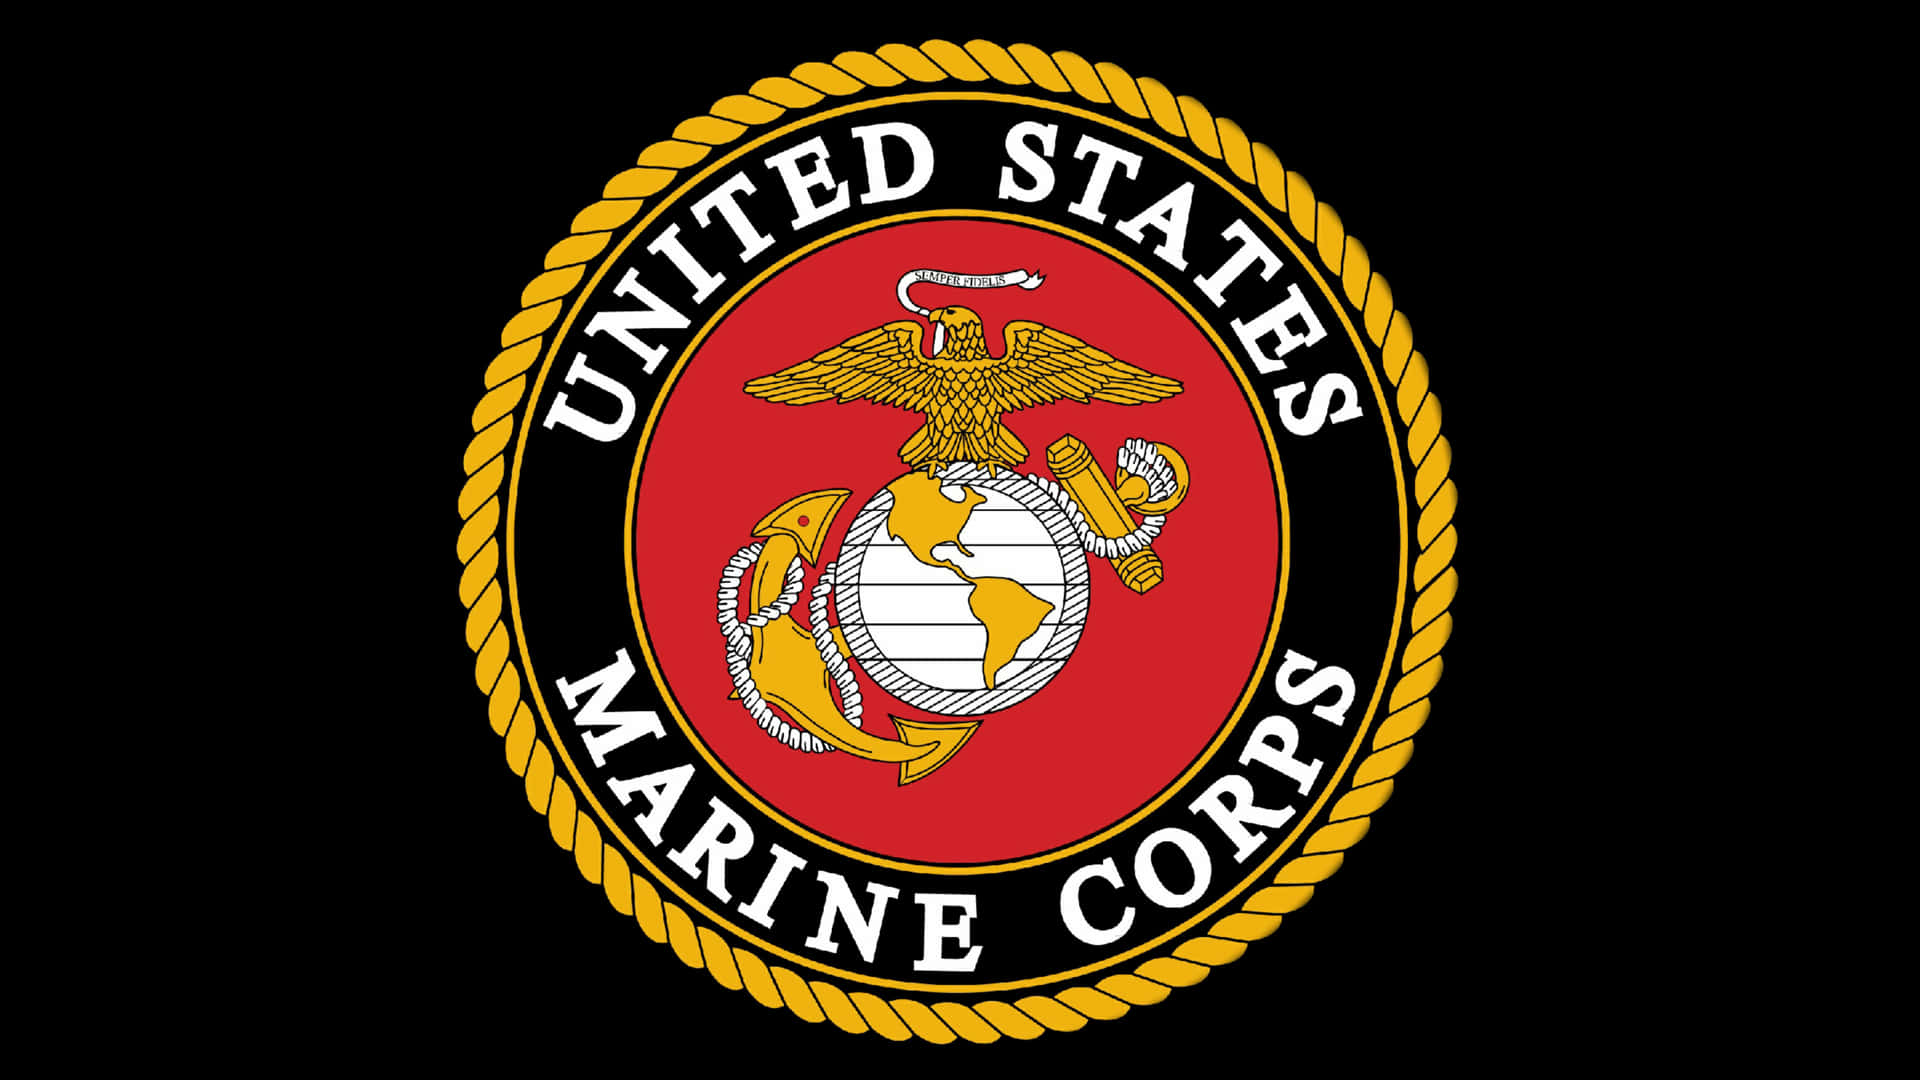 Losguerreros Más Fuertes De América, El Cuerpo De Marines De Los Estados Unidos. Fondo de pantalla